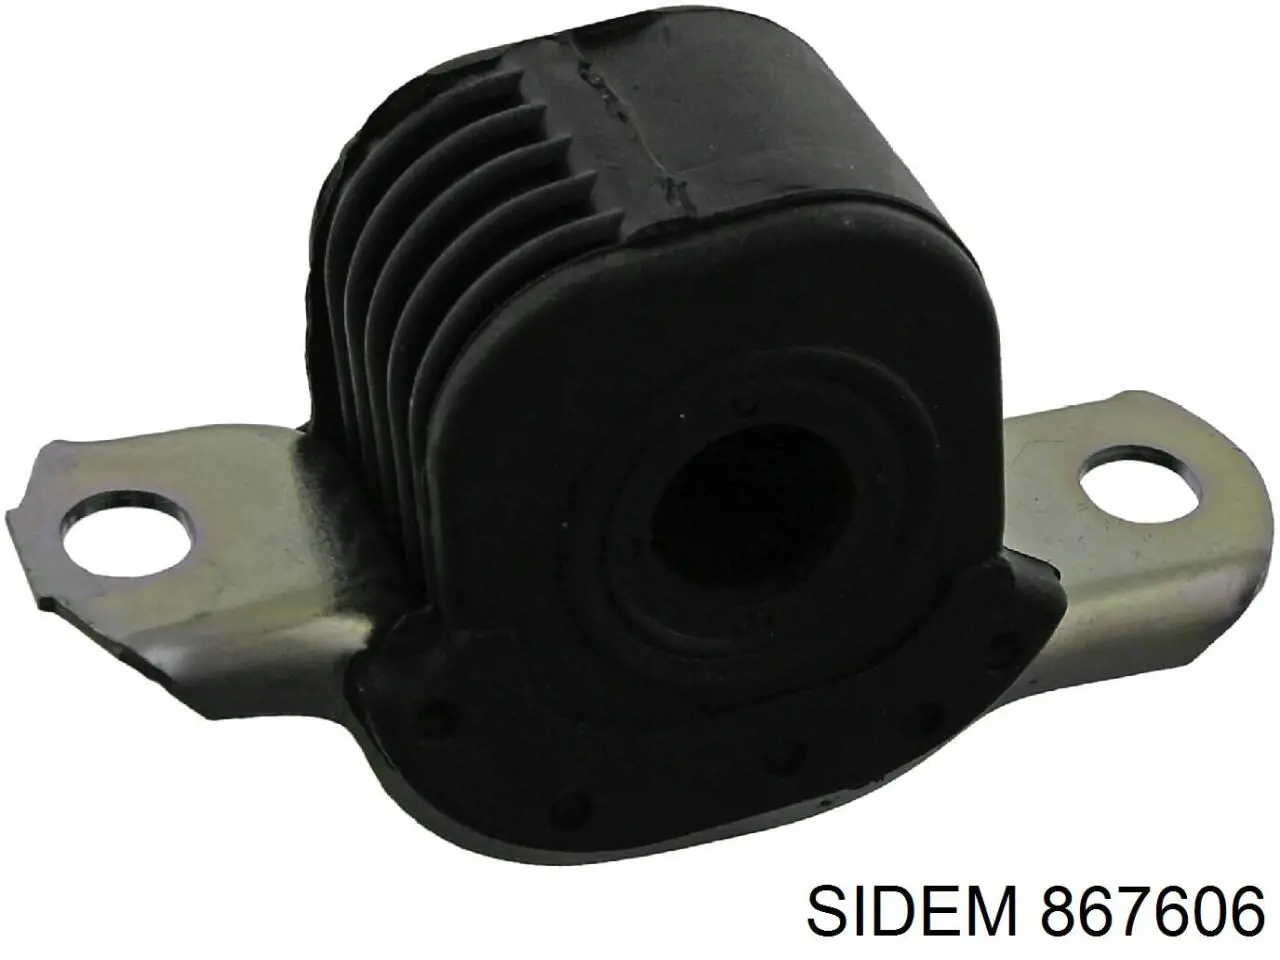 867606 Sidem silentblock de suspensión delantero inferior